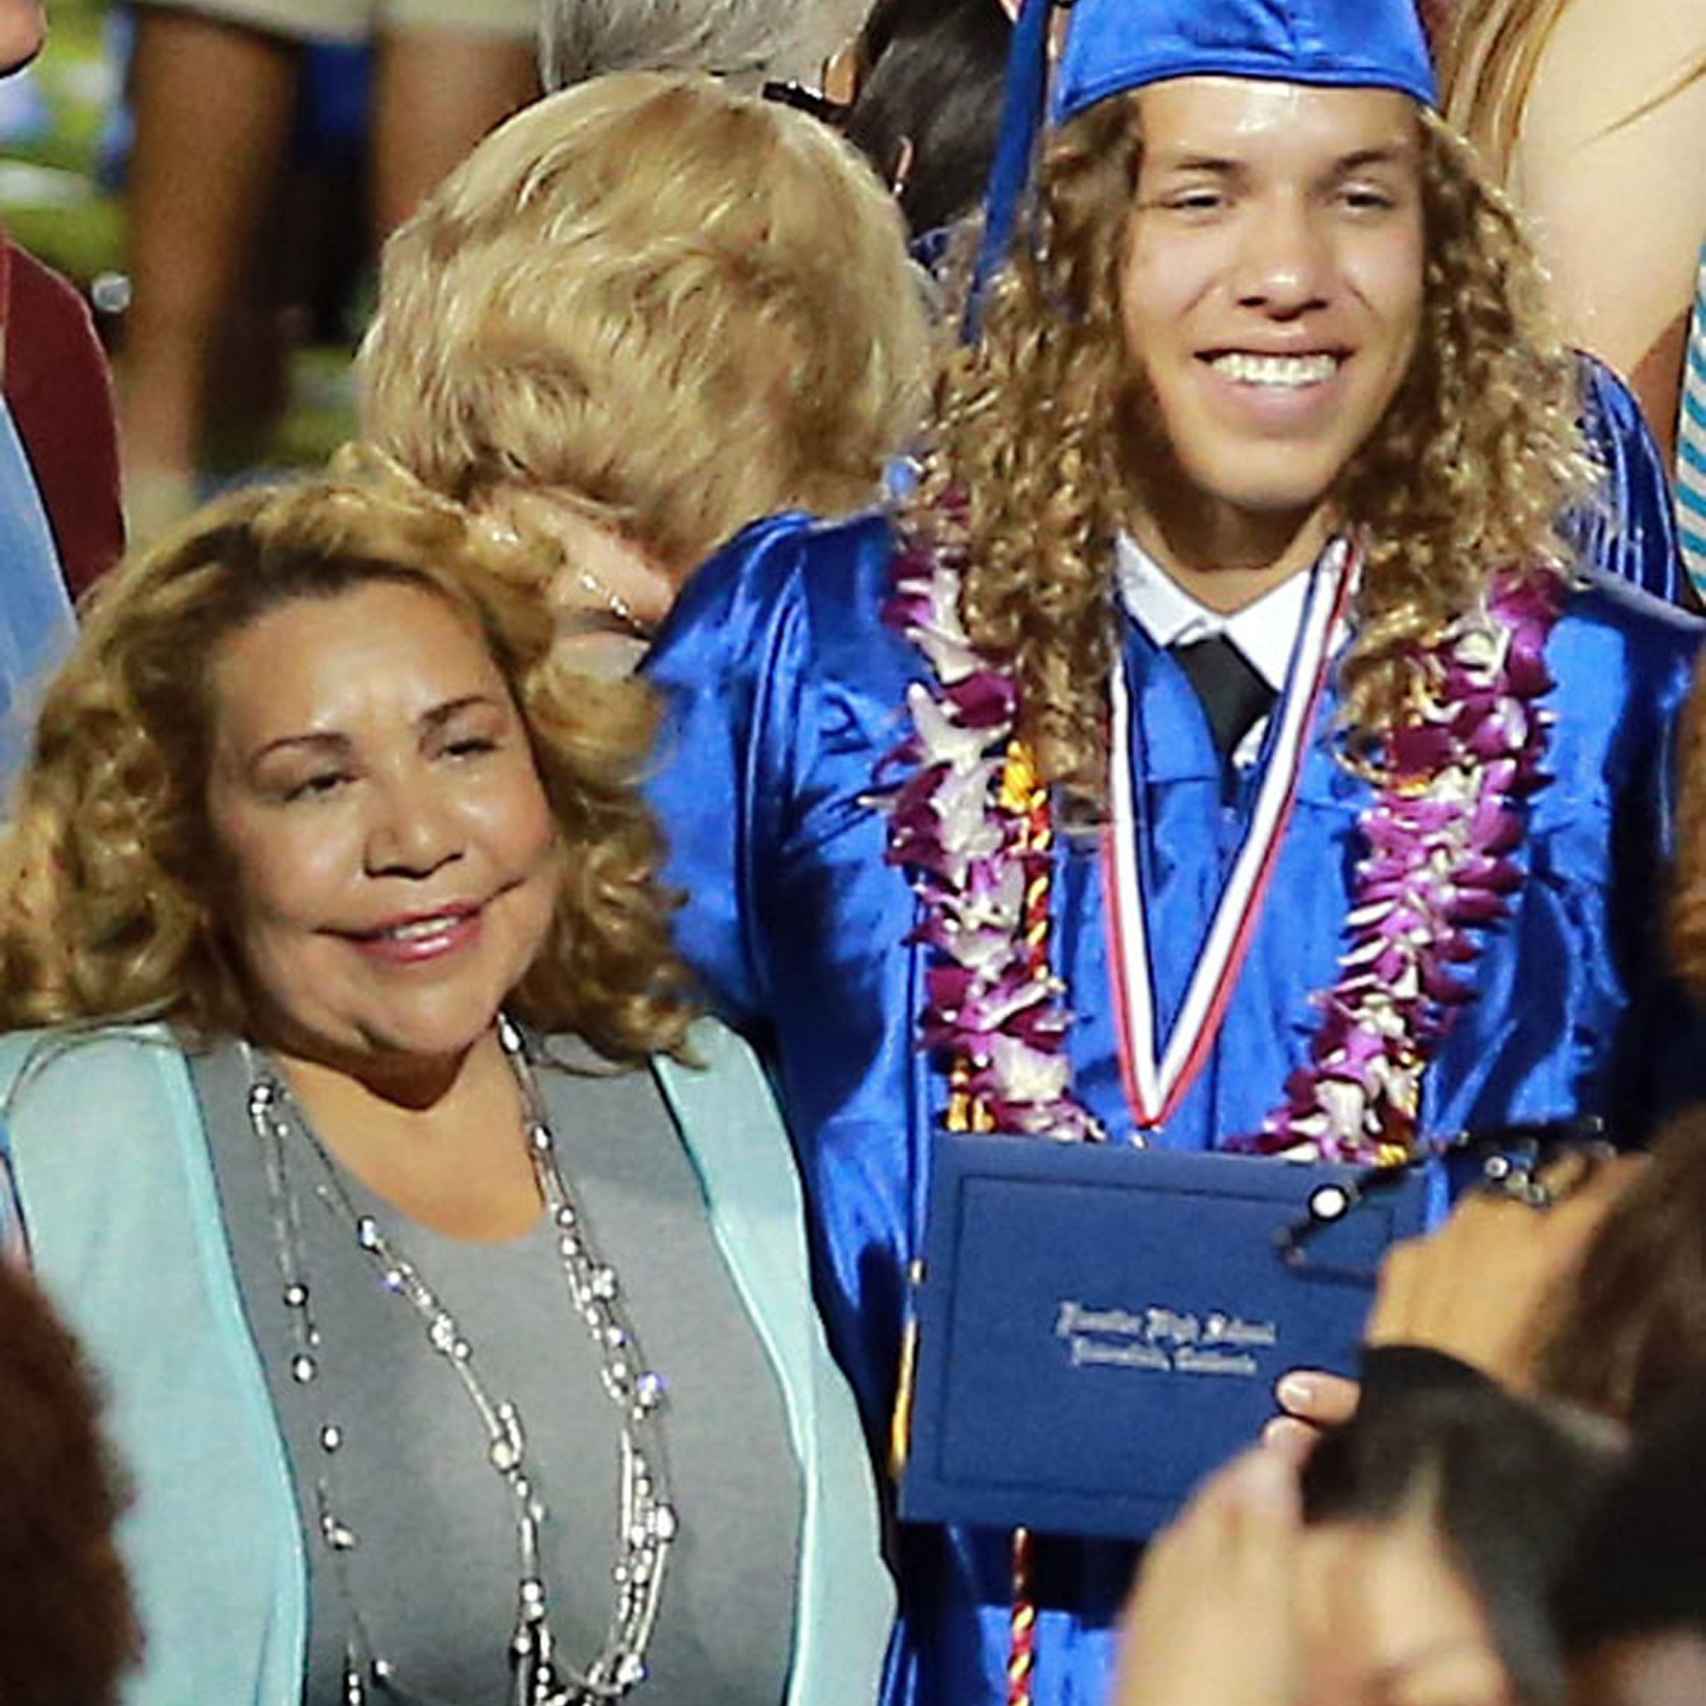 Joseph Baena el día de su graduación junto a su madre: la niñera y el hijo de Schwarzenegger